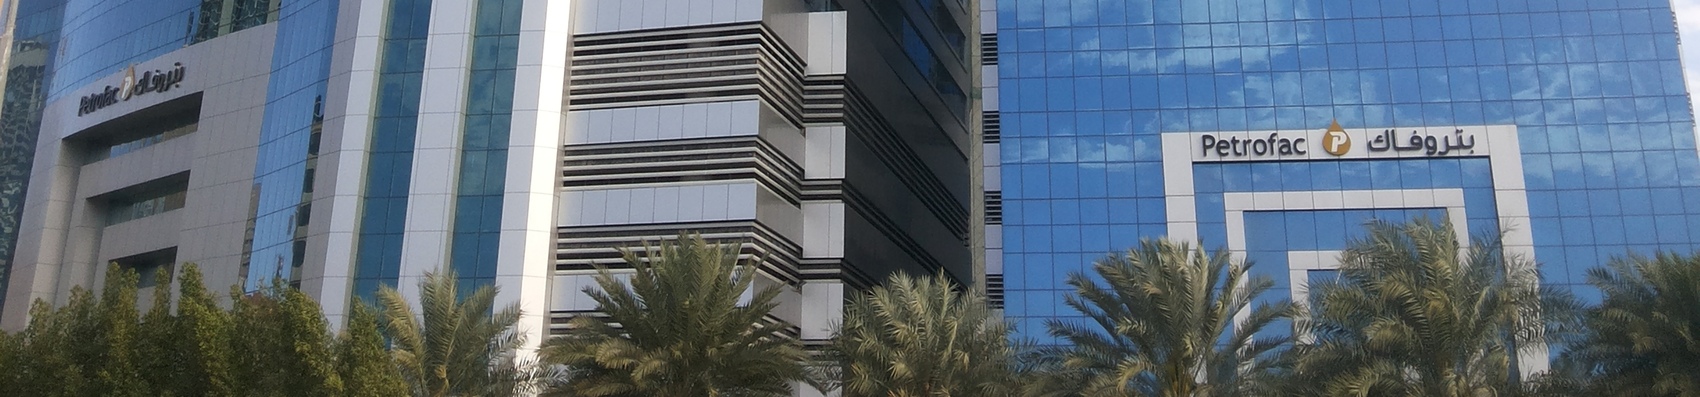 Petrofac Sharjah Office 1700X397